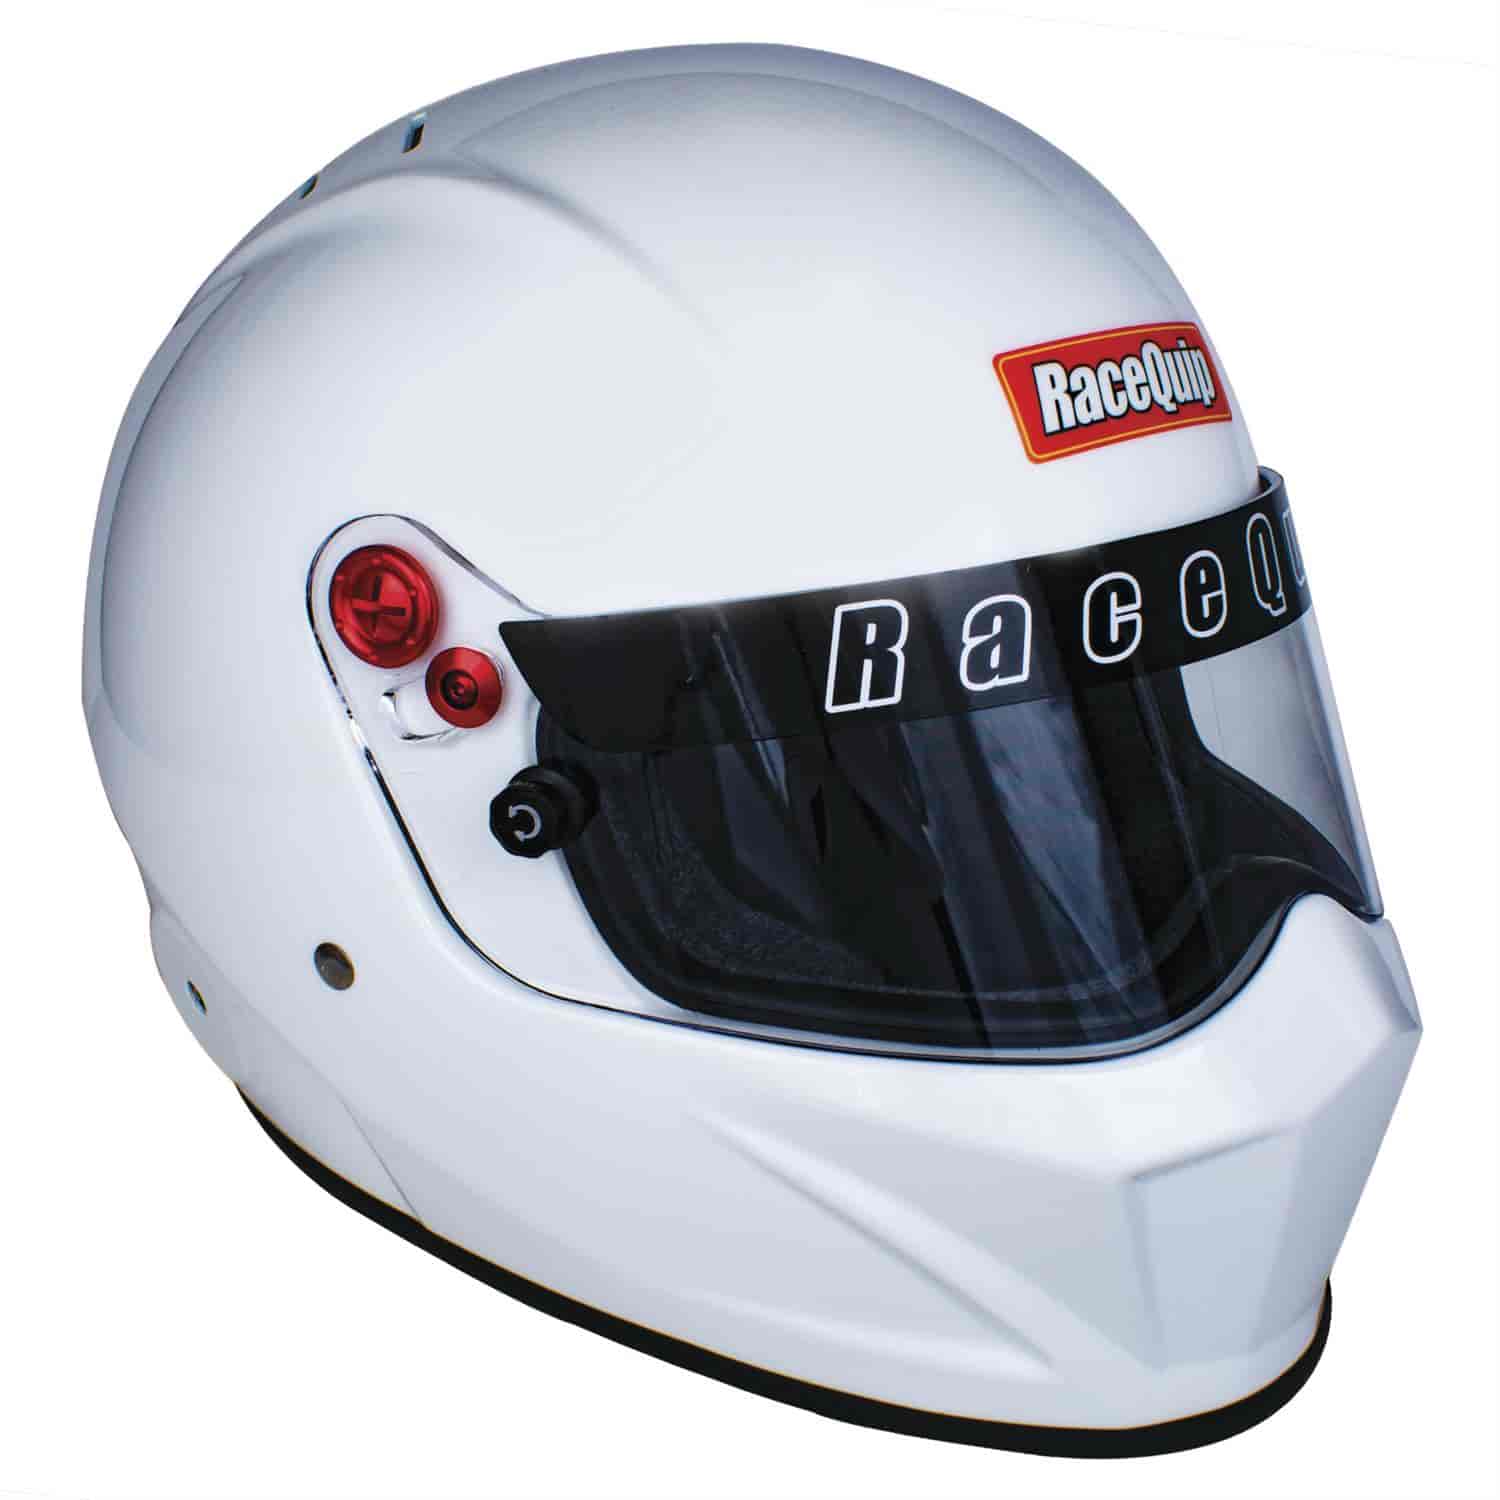 RaceQuip SA2020 Vesta20 Racing Helmets